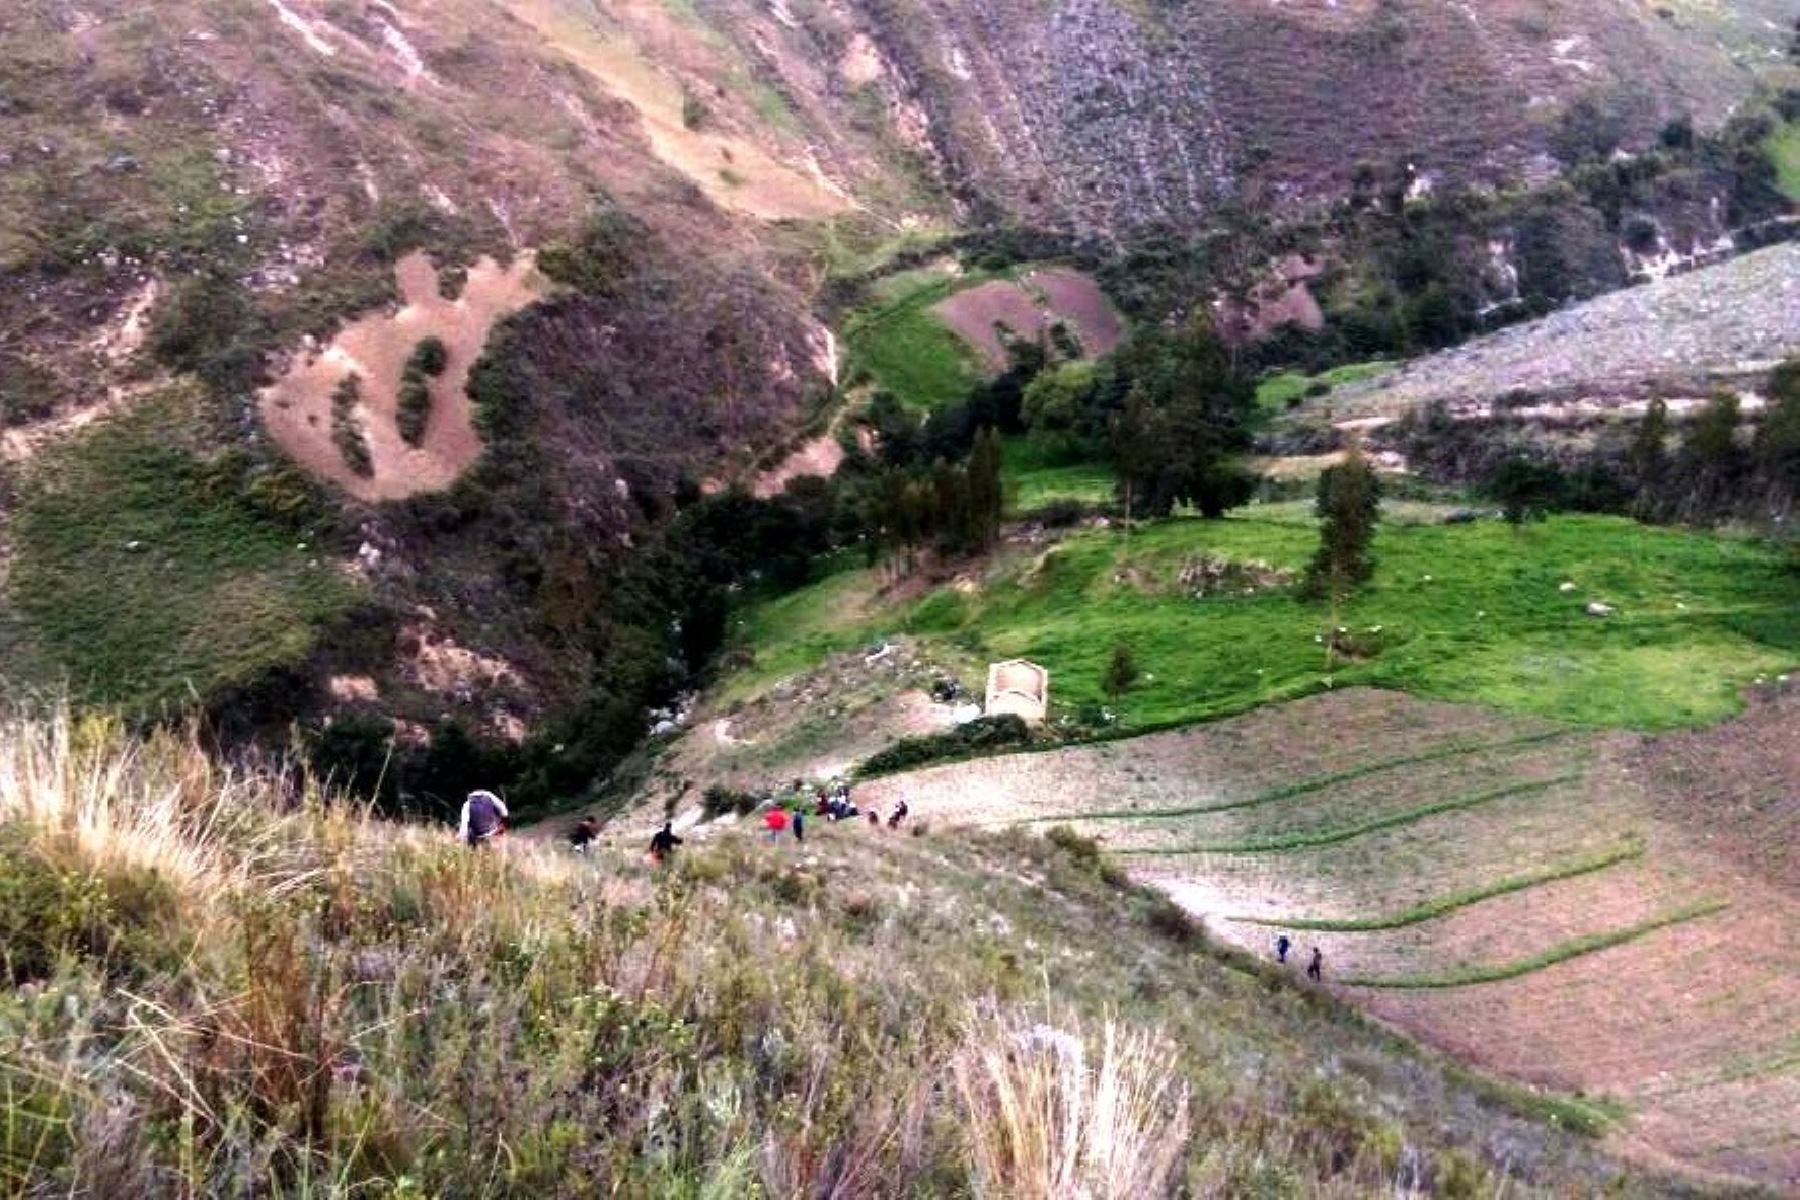 Siete miembros de una familia mueren en accidente de tránsito en Cajamarca. ANDINA